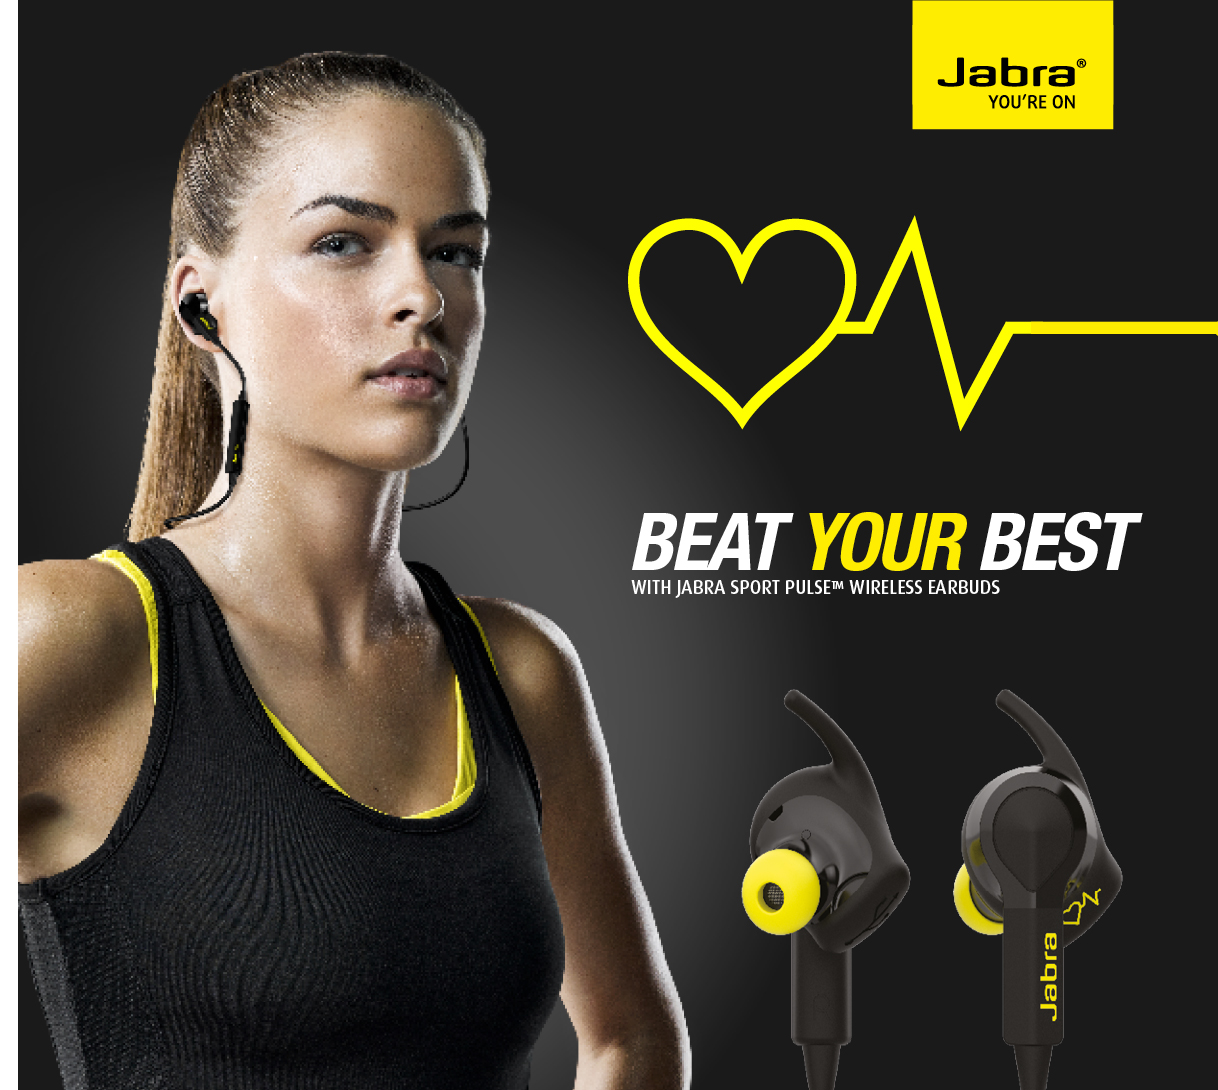 Jabra耳机的摄氧量监测功能可供医生用于患者身体状况监控